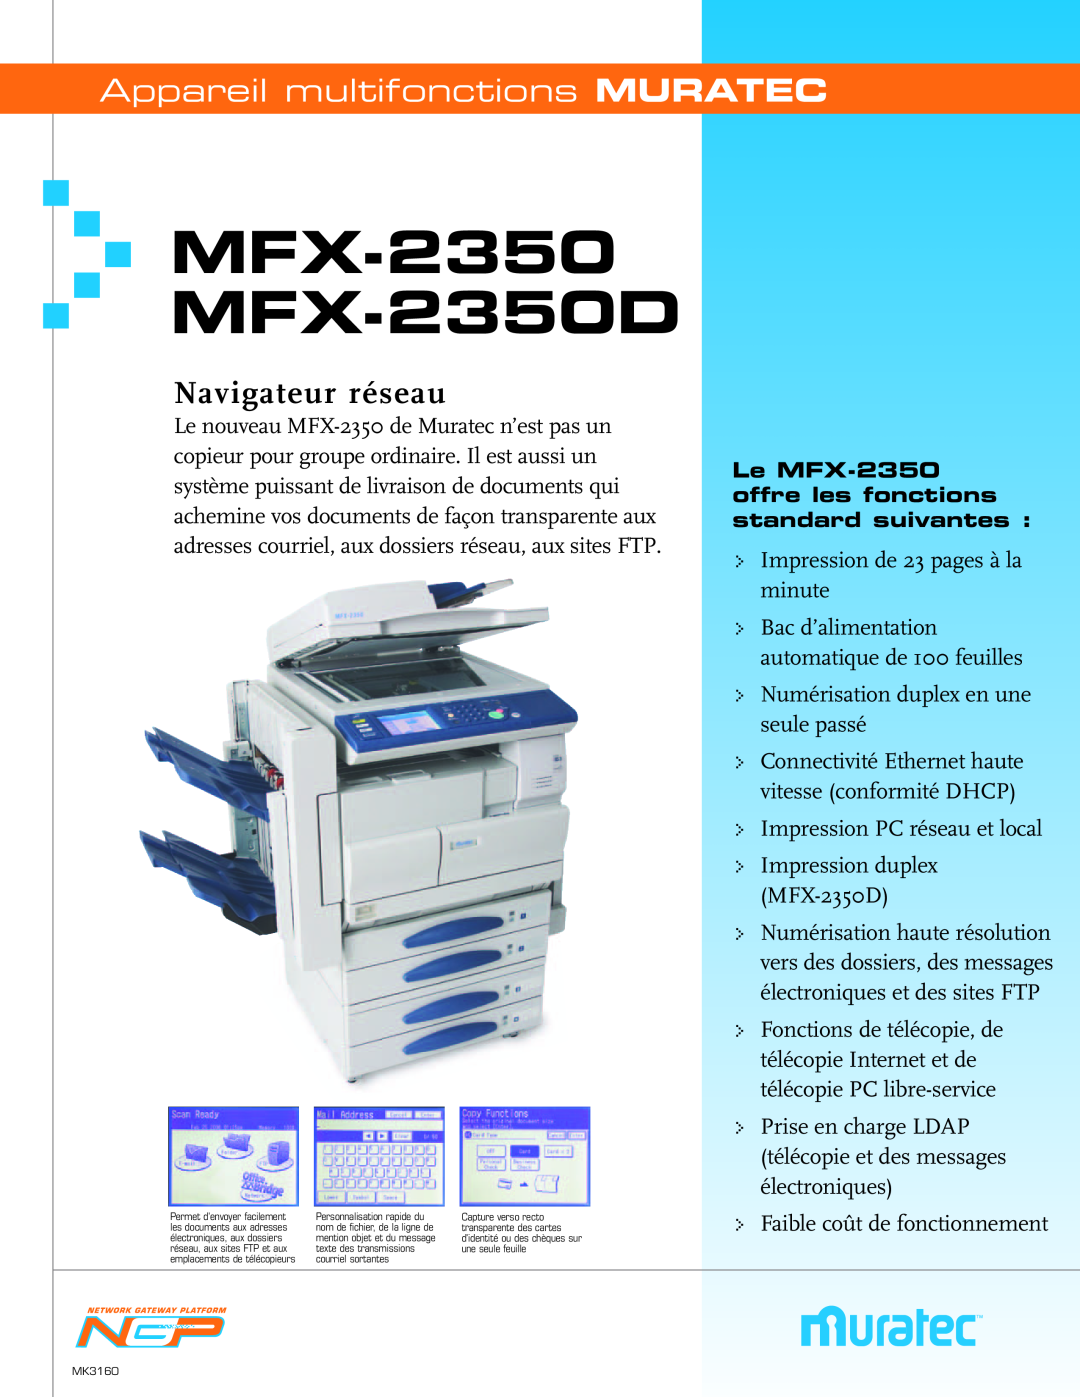 Muratec MFX-2350 manual Appareil multifonctions MURATEC, MFXMFX--23502350D, Navigateur réseau 